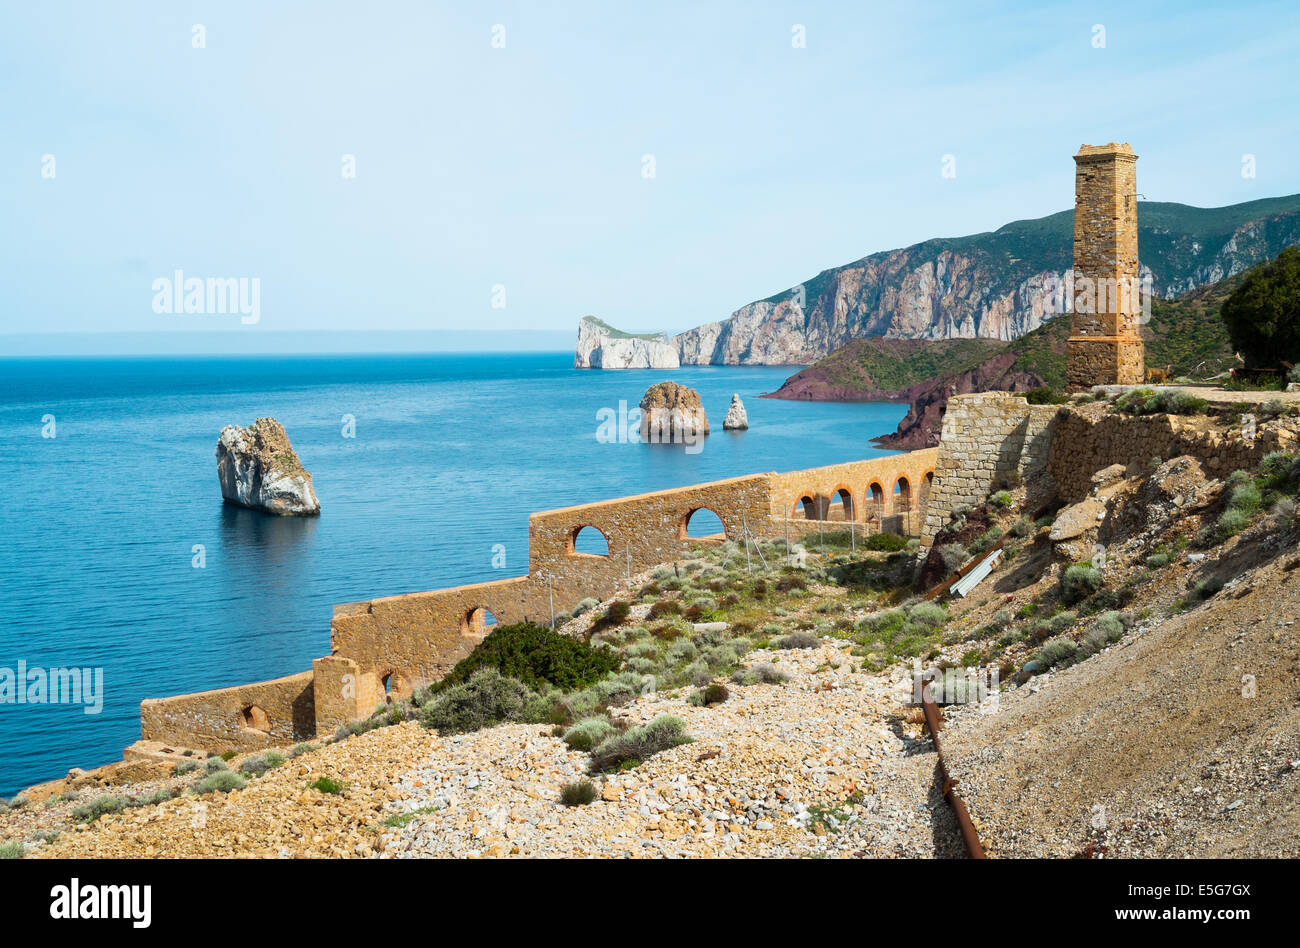 Laveria Lamarmora, an old mine building along the coast of Nebida and Masua, west coast of Sardinia, Italy Stock Photo